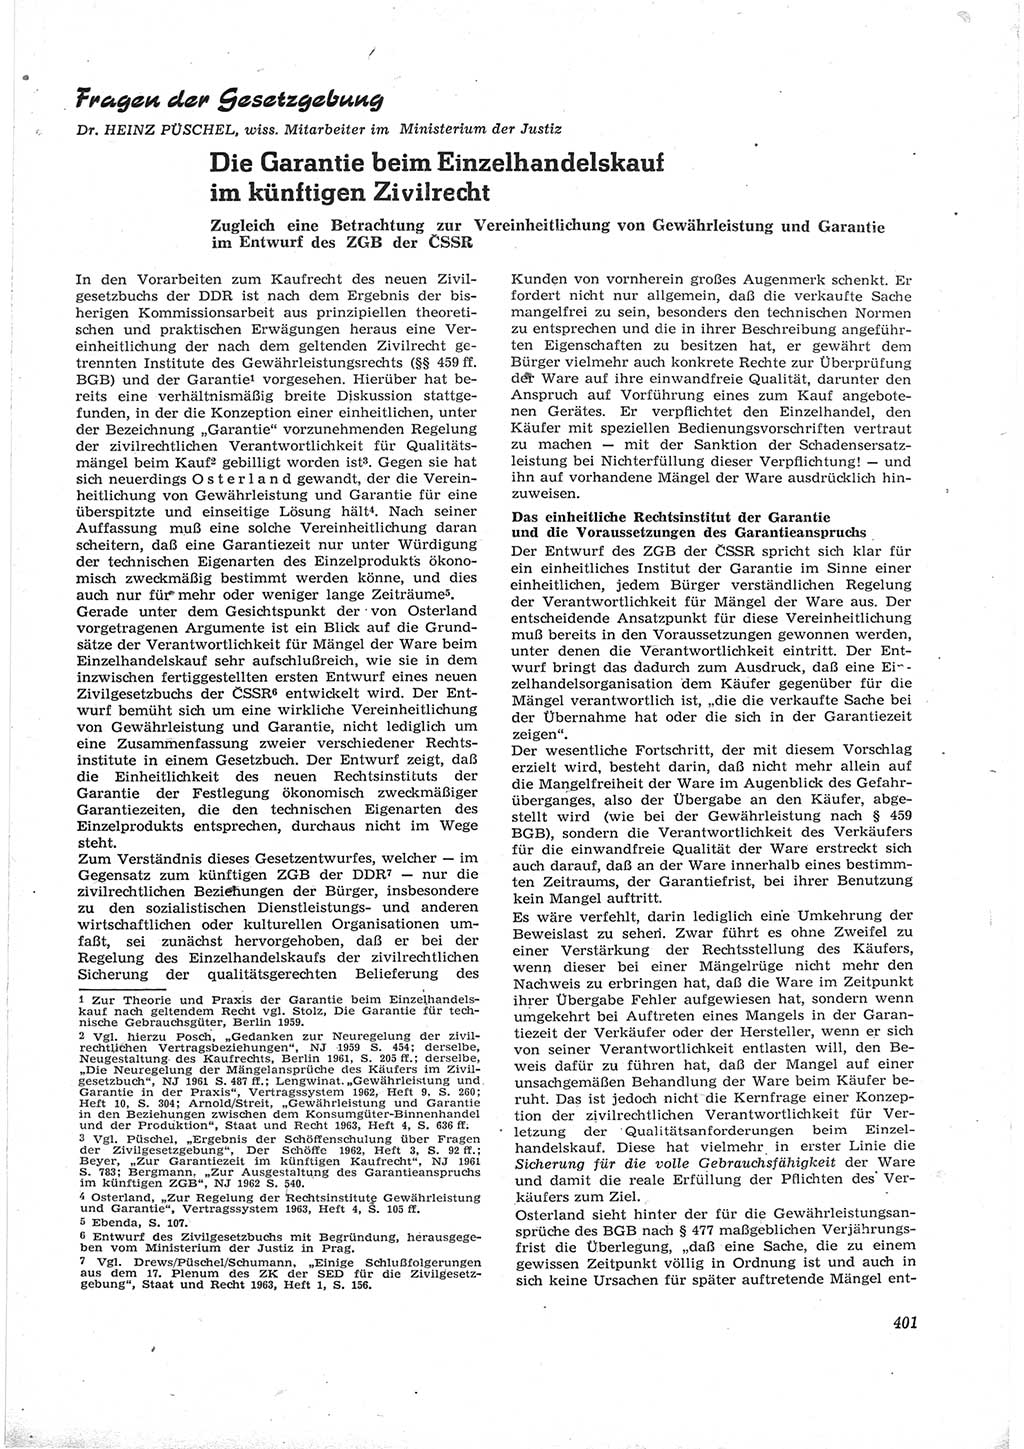 Neue Justiz (NJ), Zeitschrift für Recht und Rechtswissenschaft [Deutsche Demokratische Republik (DDR)], 17. Jahrgang 1963, Seite 401 (NJ DDR 1963, S. 401)